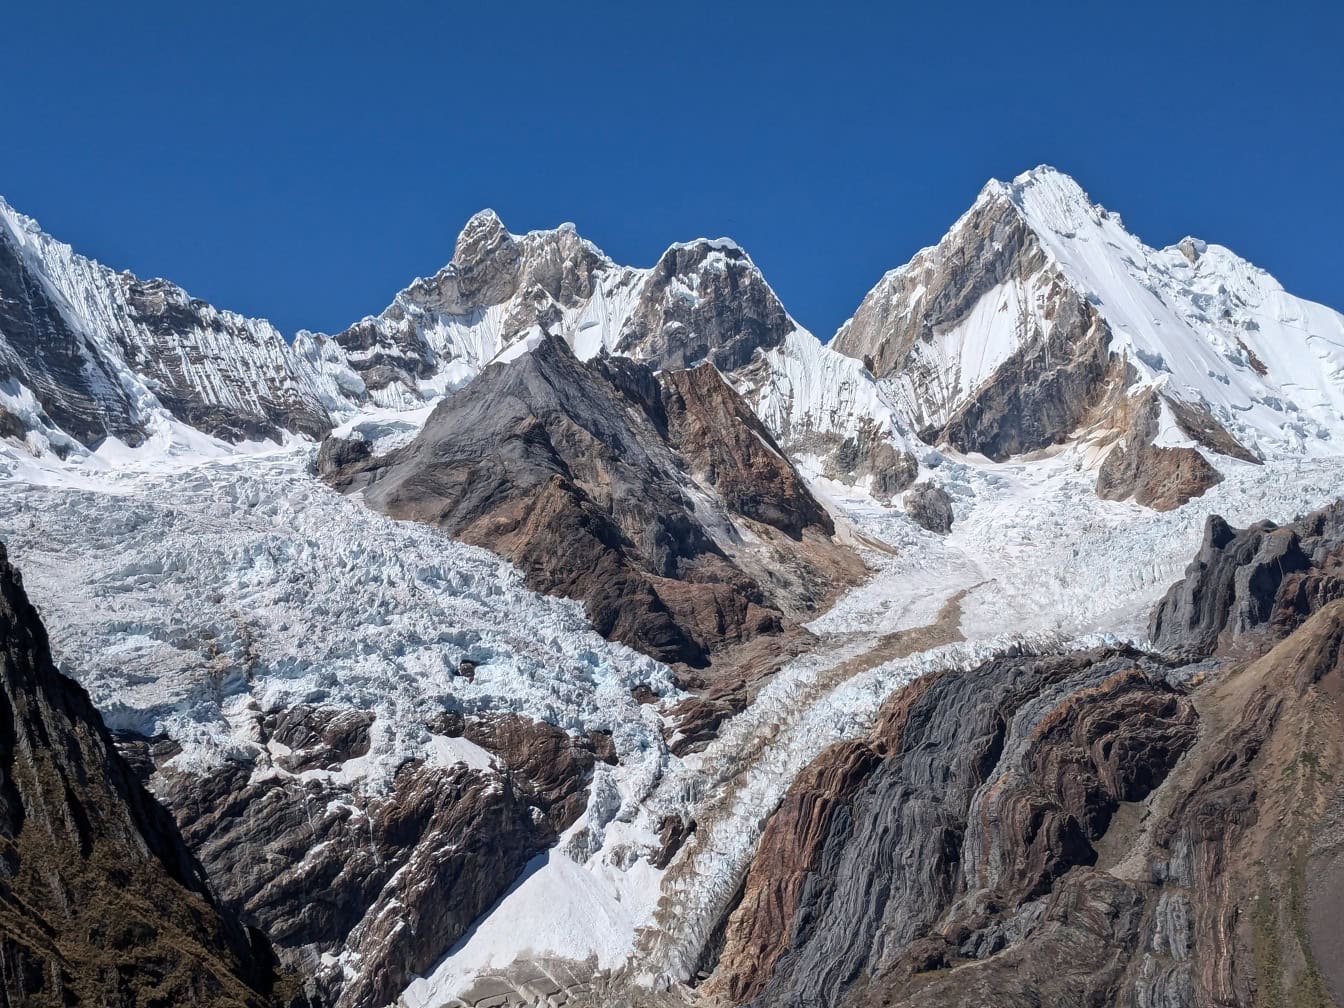 Peru’nun And Dağları’ndaki Cordillera Huayhuash sıradağlarının dağ zirvelerinde donmuş buzul, arka plan olarak mavi bir gökyüzü